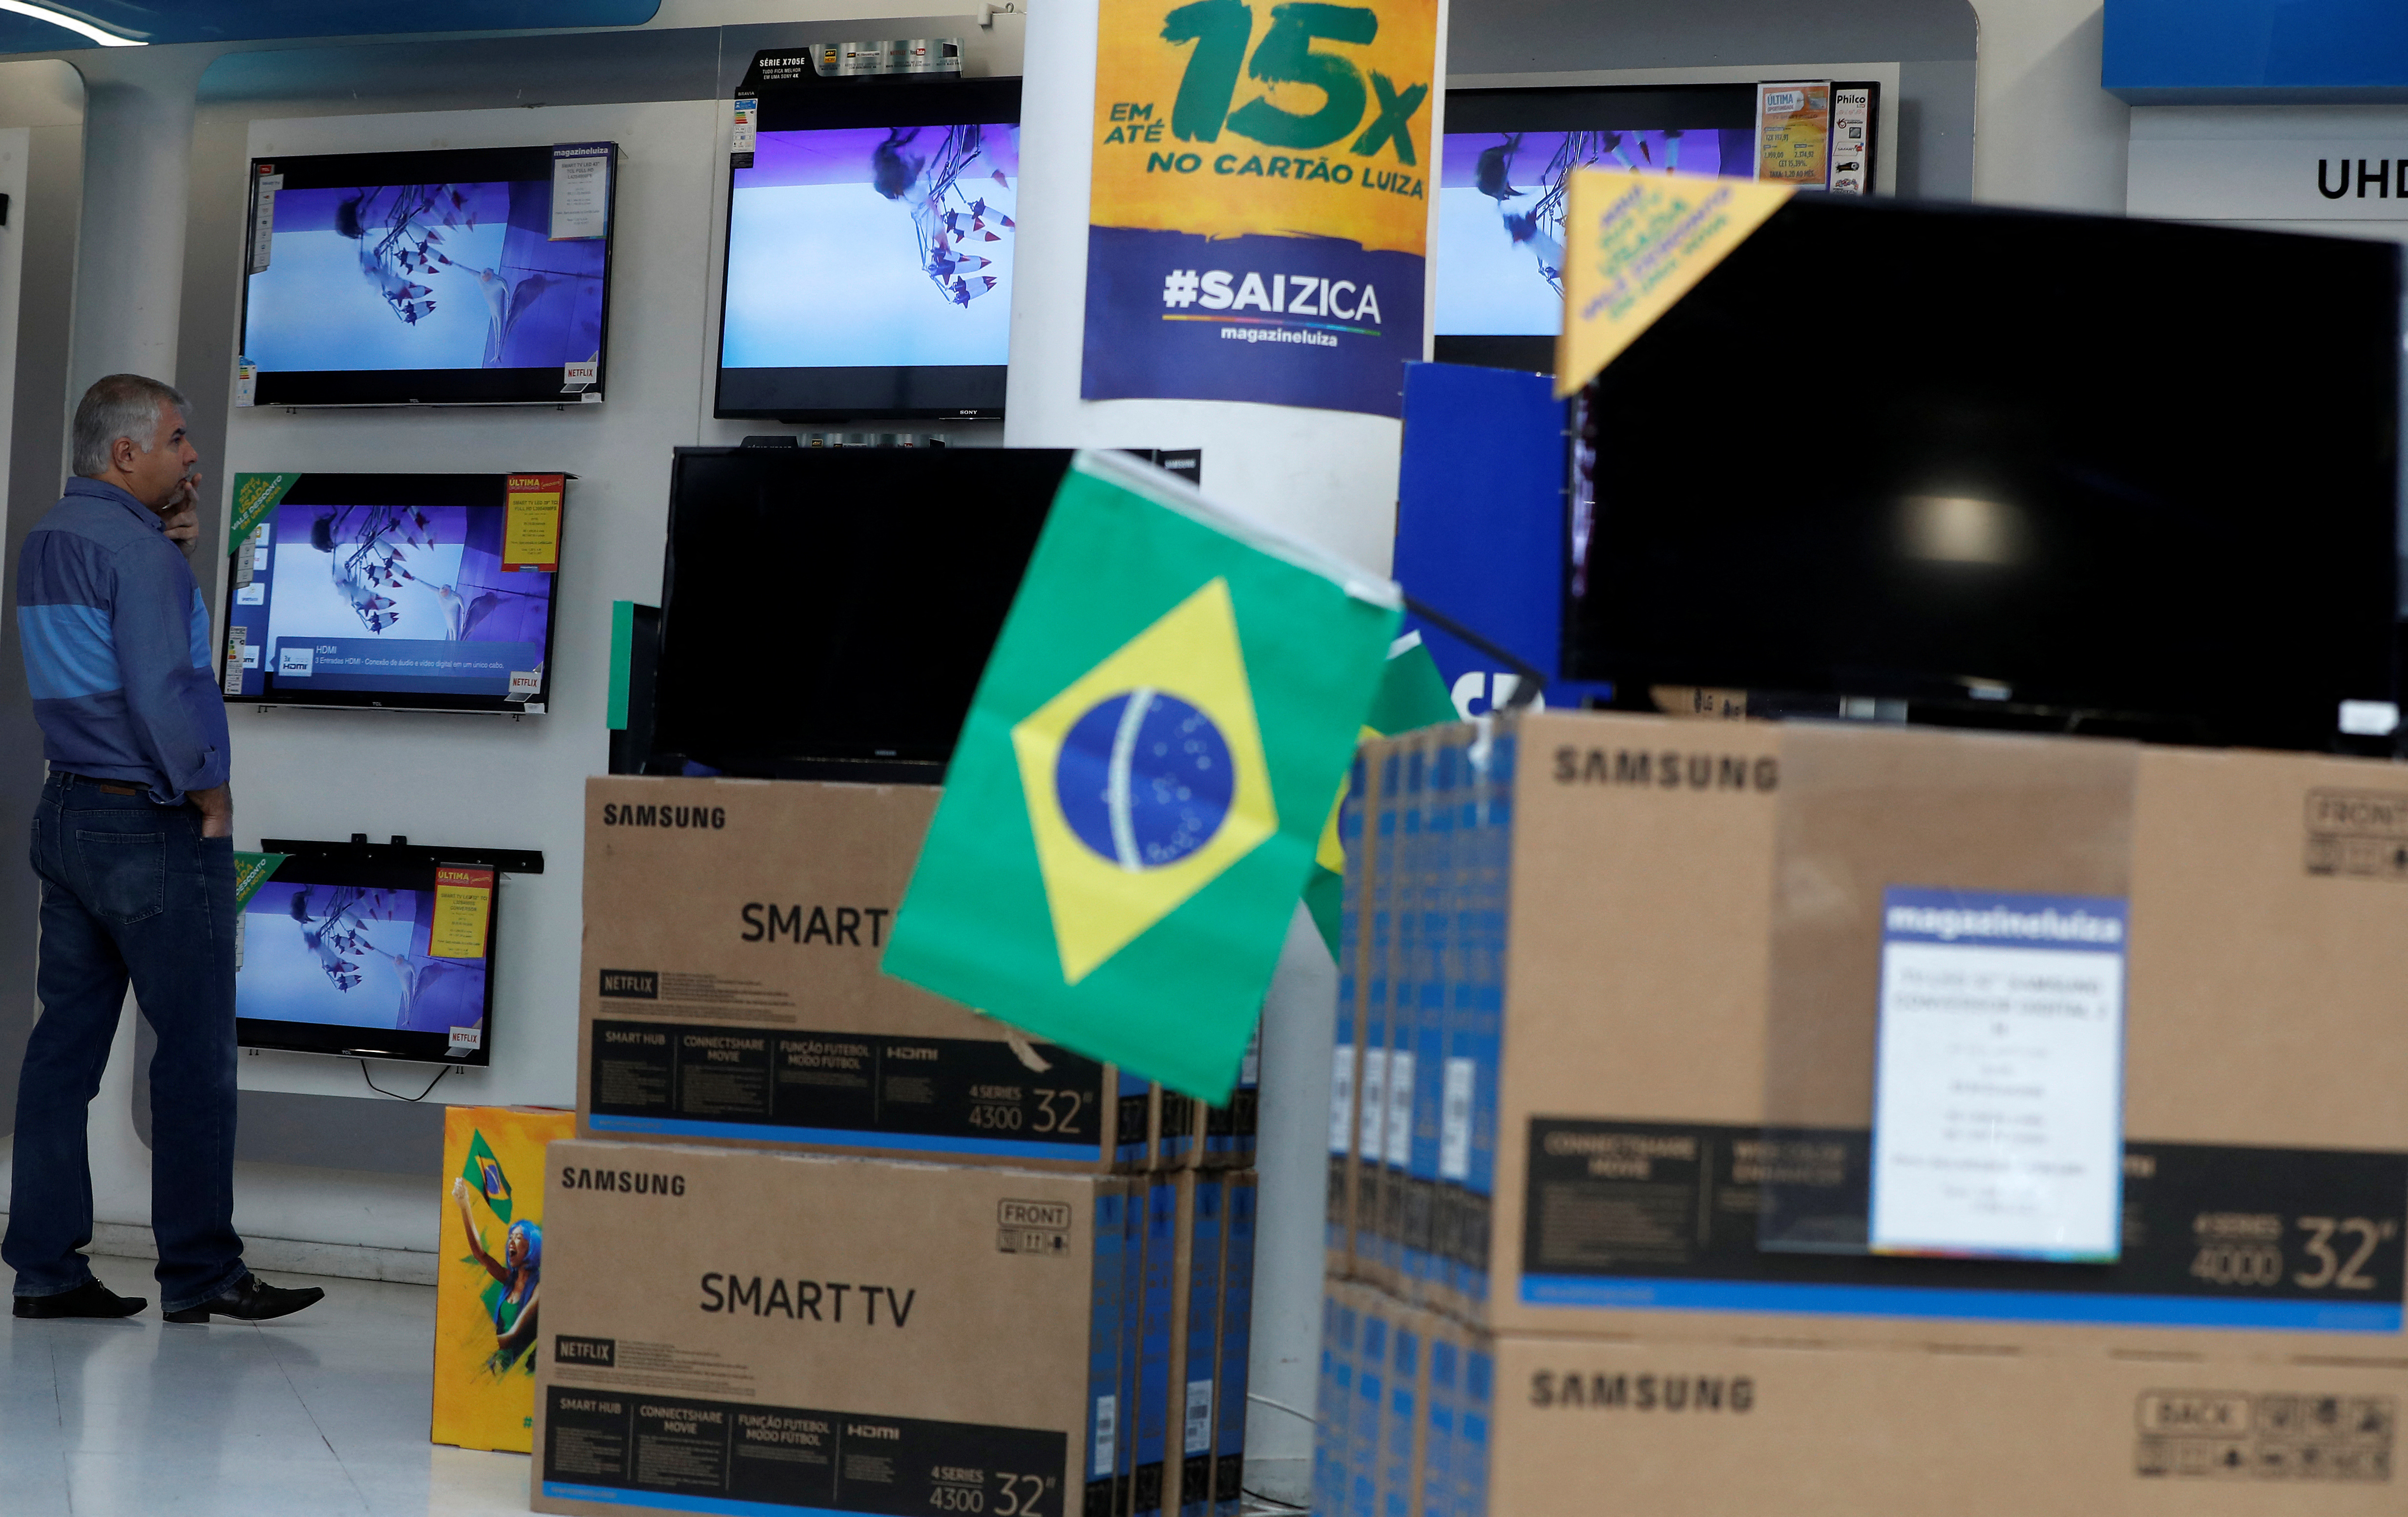 ブラジル経済活動指数、第1四半期は上昇　3月は低下